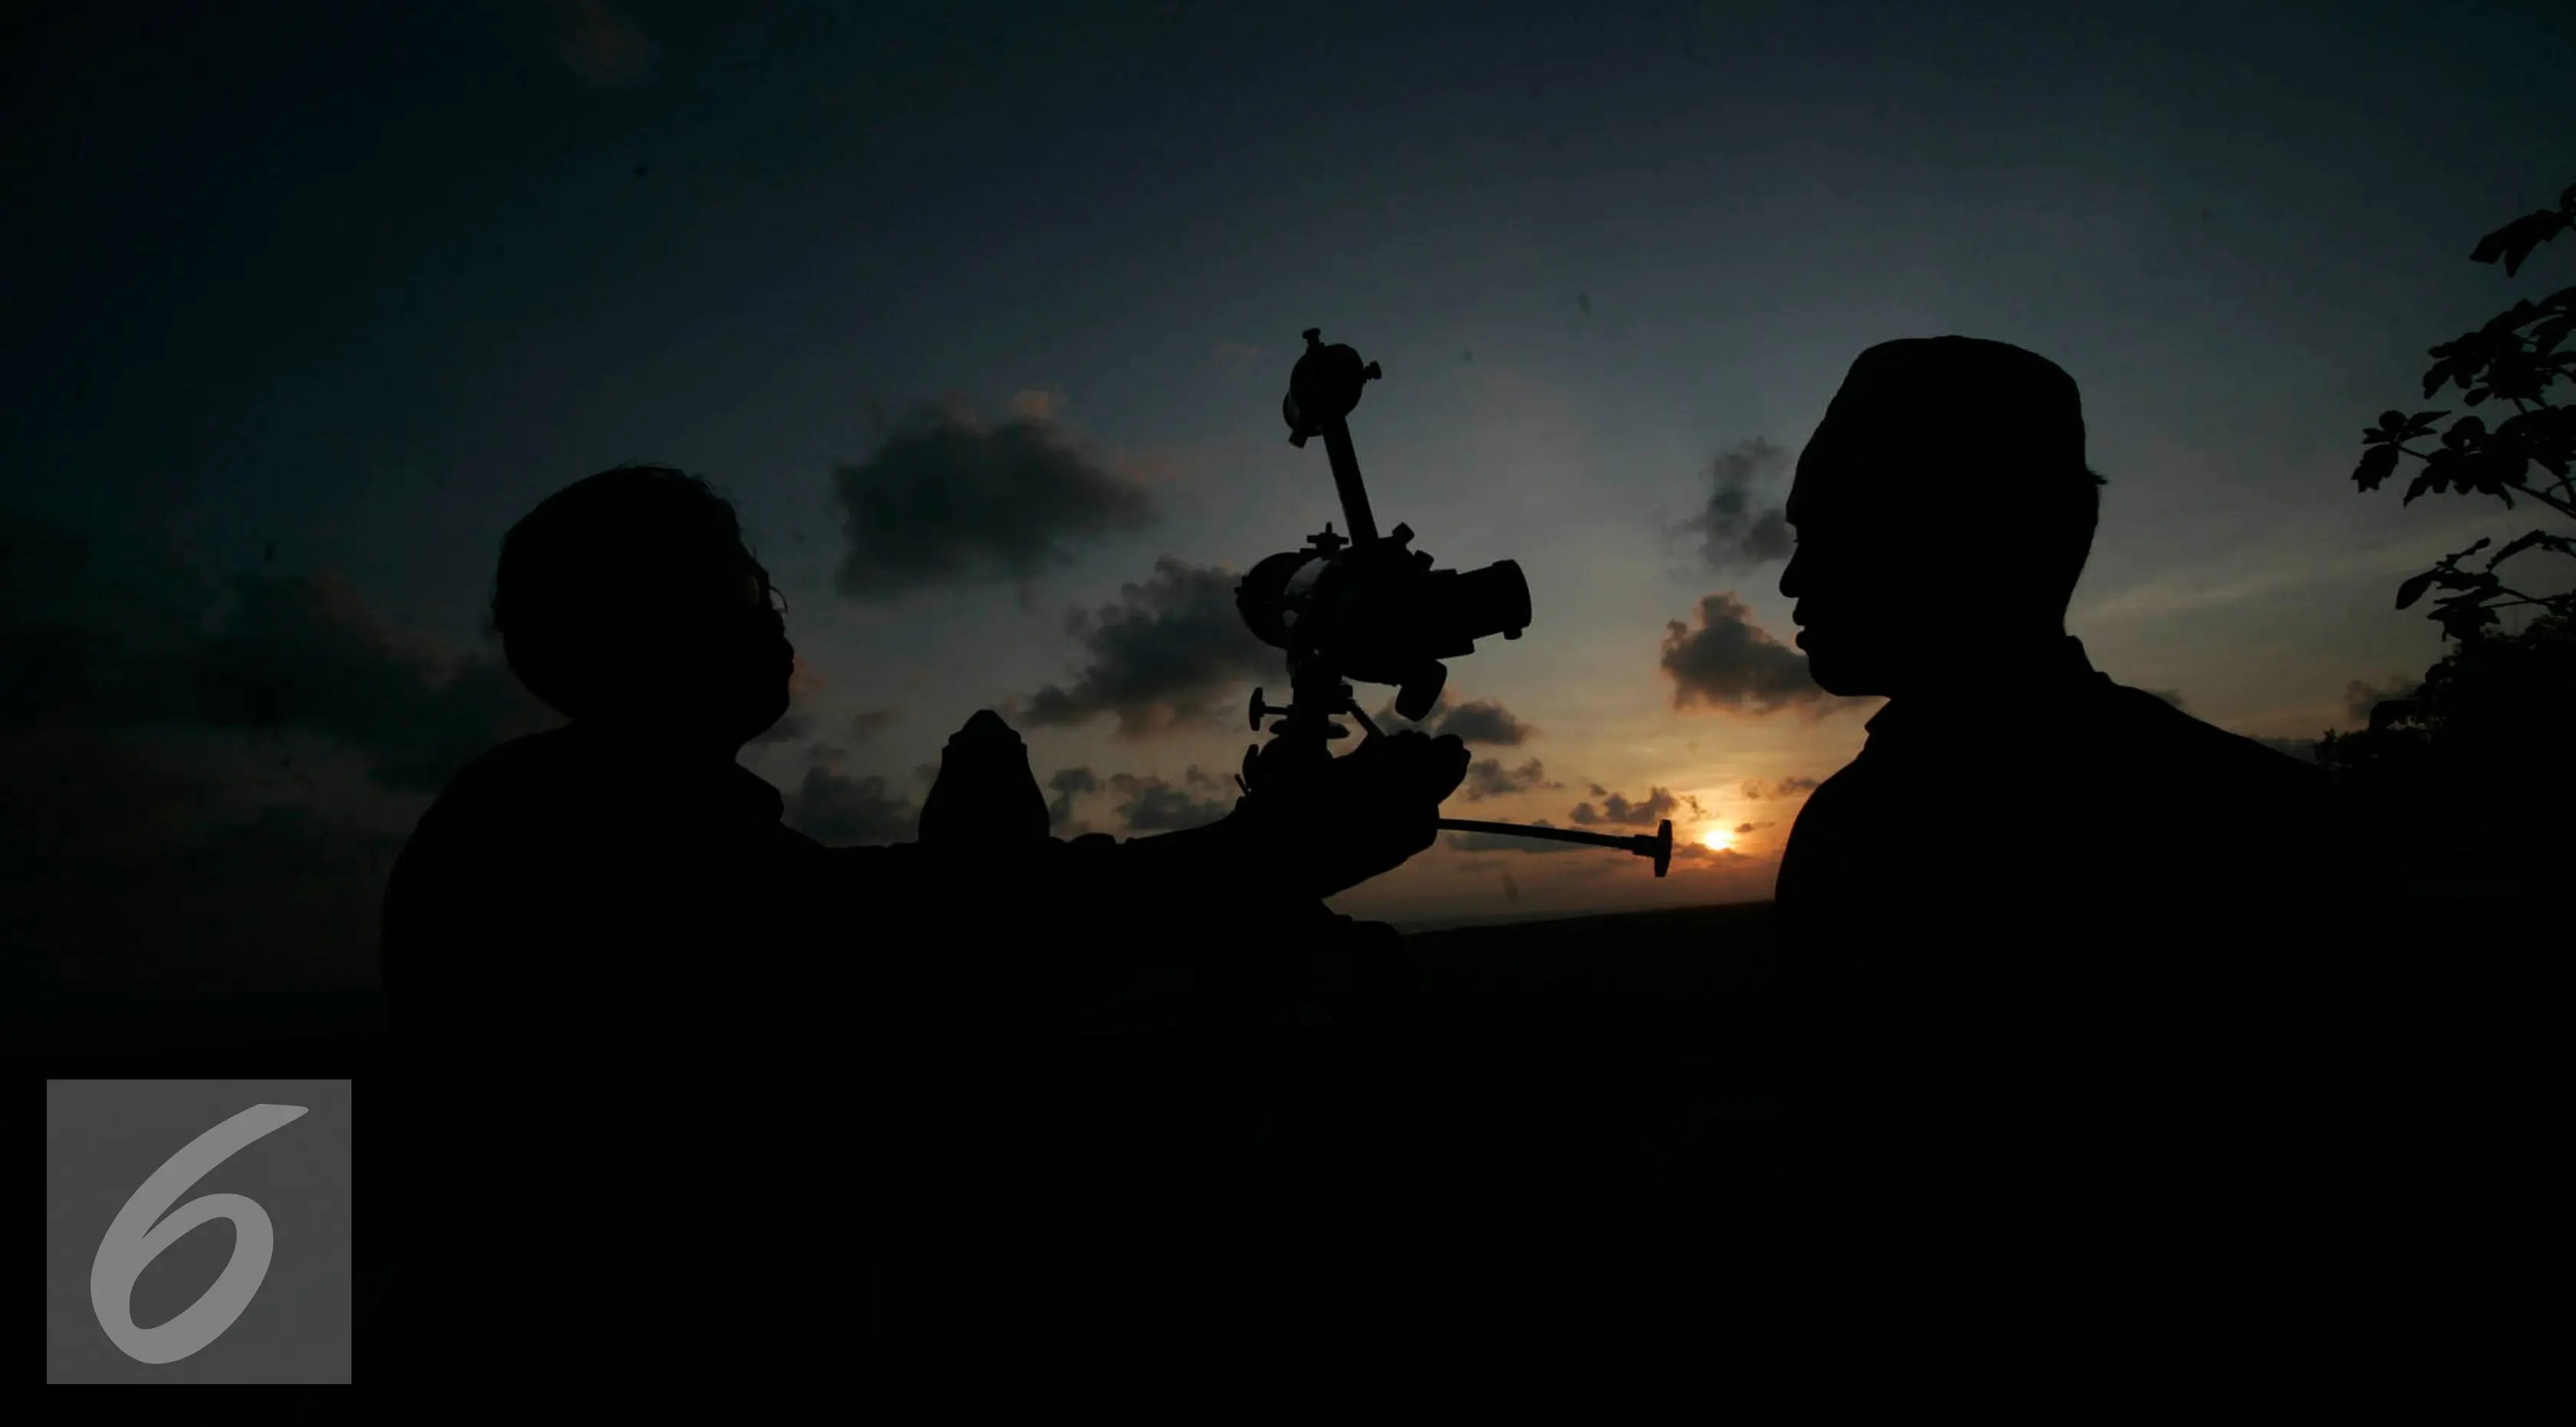 Mahasiswa mempersiapkan teleskop untuk melihat hilal di Parang Tritis, Yogyakarta, Kamis (1/9). Selain melakukan pengamatan penentuan ruhiyat hilal untuk penetapan 1 Dzulhijah, mereka juga hendak melihat gerhana matahari cincin.(Liputan6.com/Boy Harjanto)